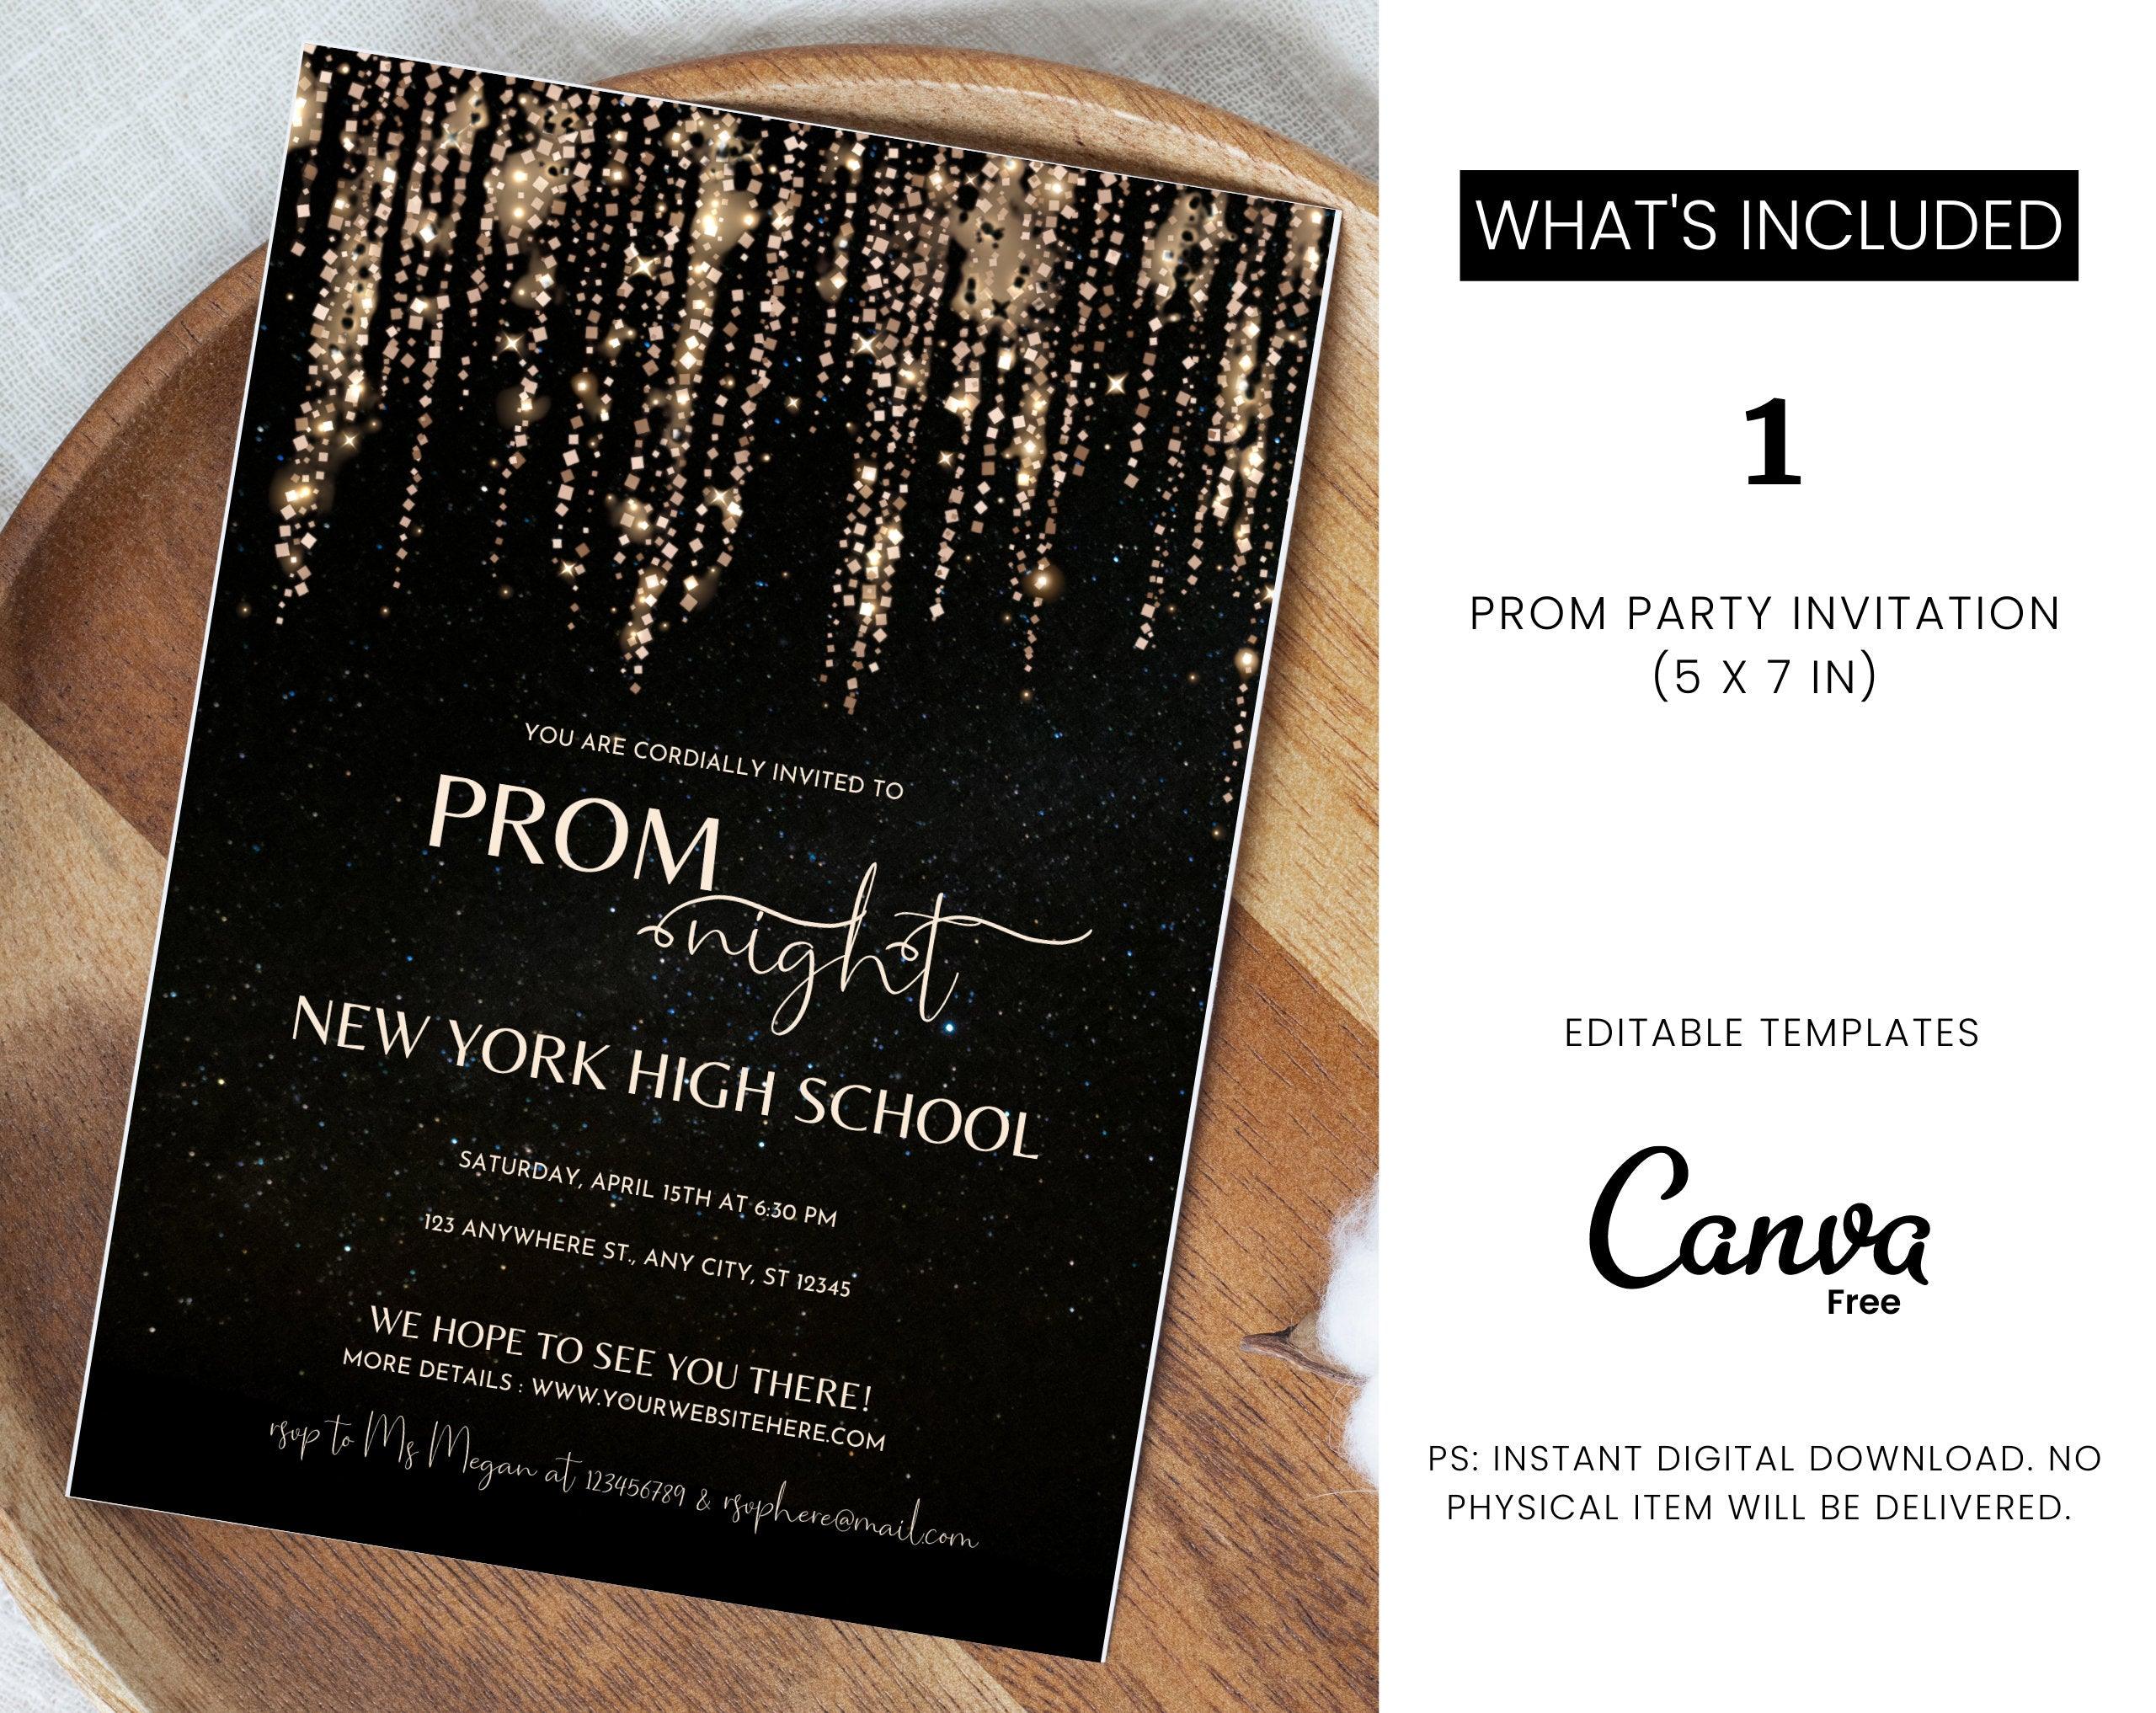 プロムの夜、プロム パーティーの招待状、プロムの招待状フライヤー、プロム イベント フライヤーのデジタル ダウンロード、カード テンプレート、デジタル編集可能な Canva テンプレート - plusminusco.com